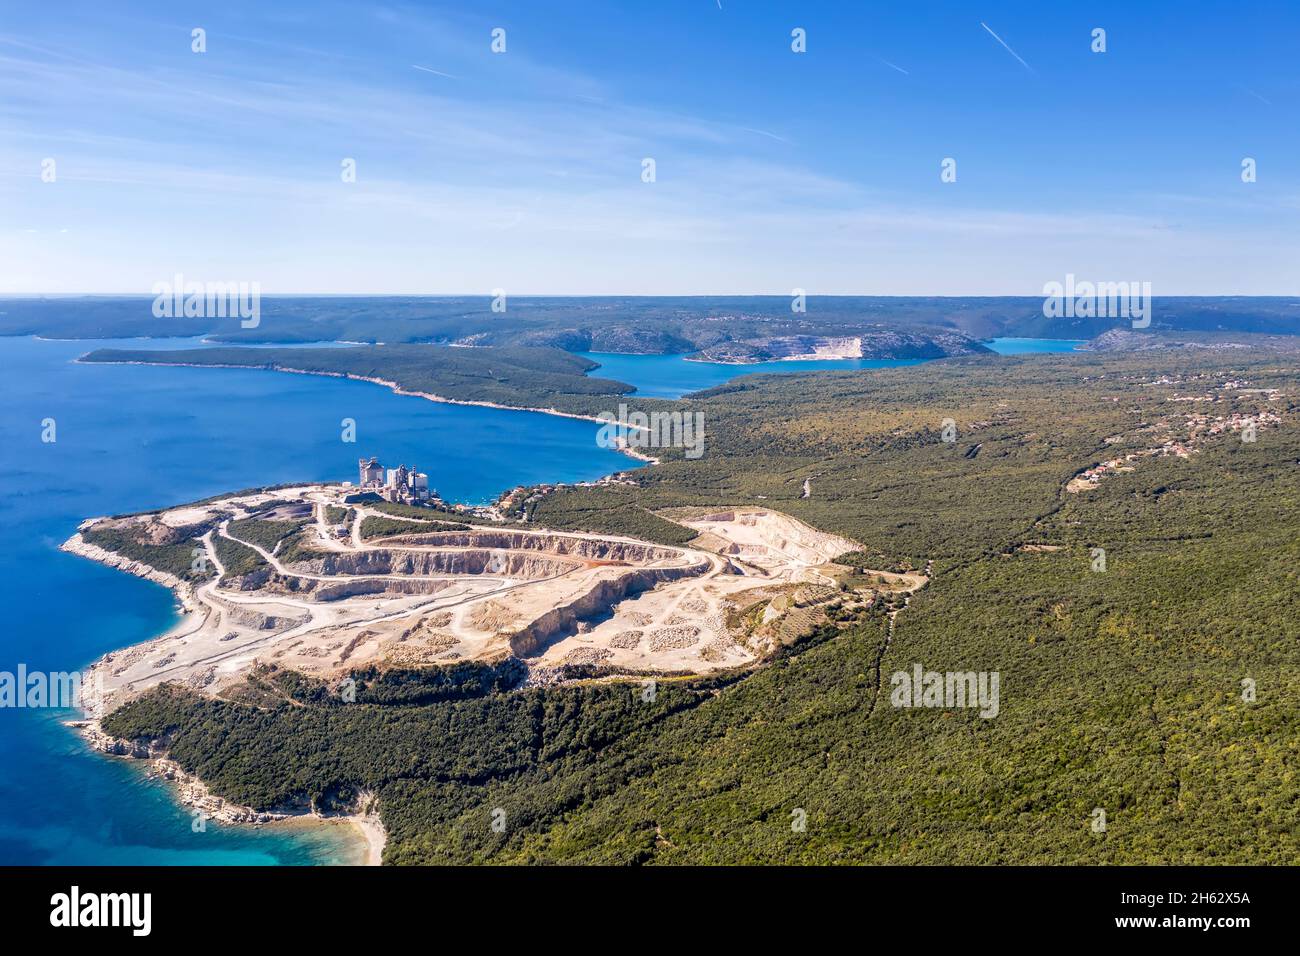 Une vue aérienne de la baie de Rasa, dans l'usine de ciment de premier plan Koromacno, Istria, Croatie Banque D'Images